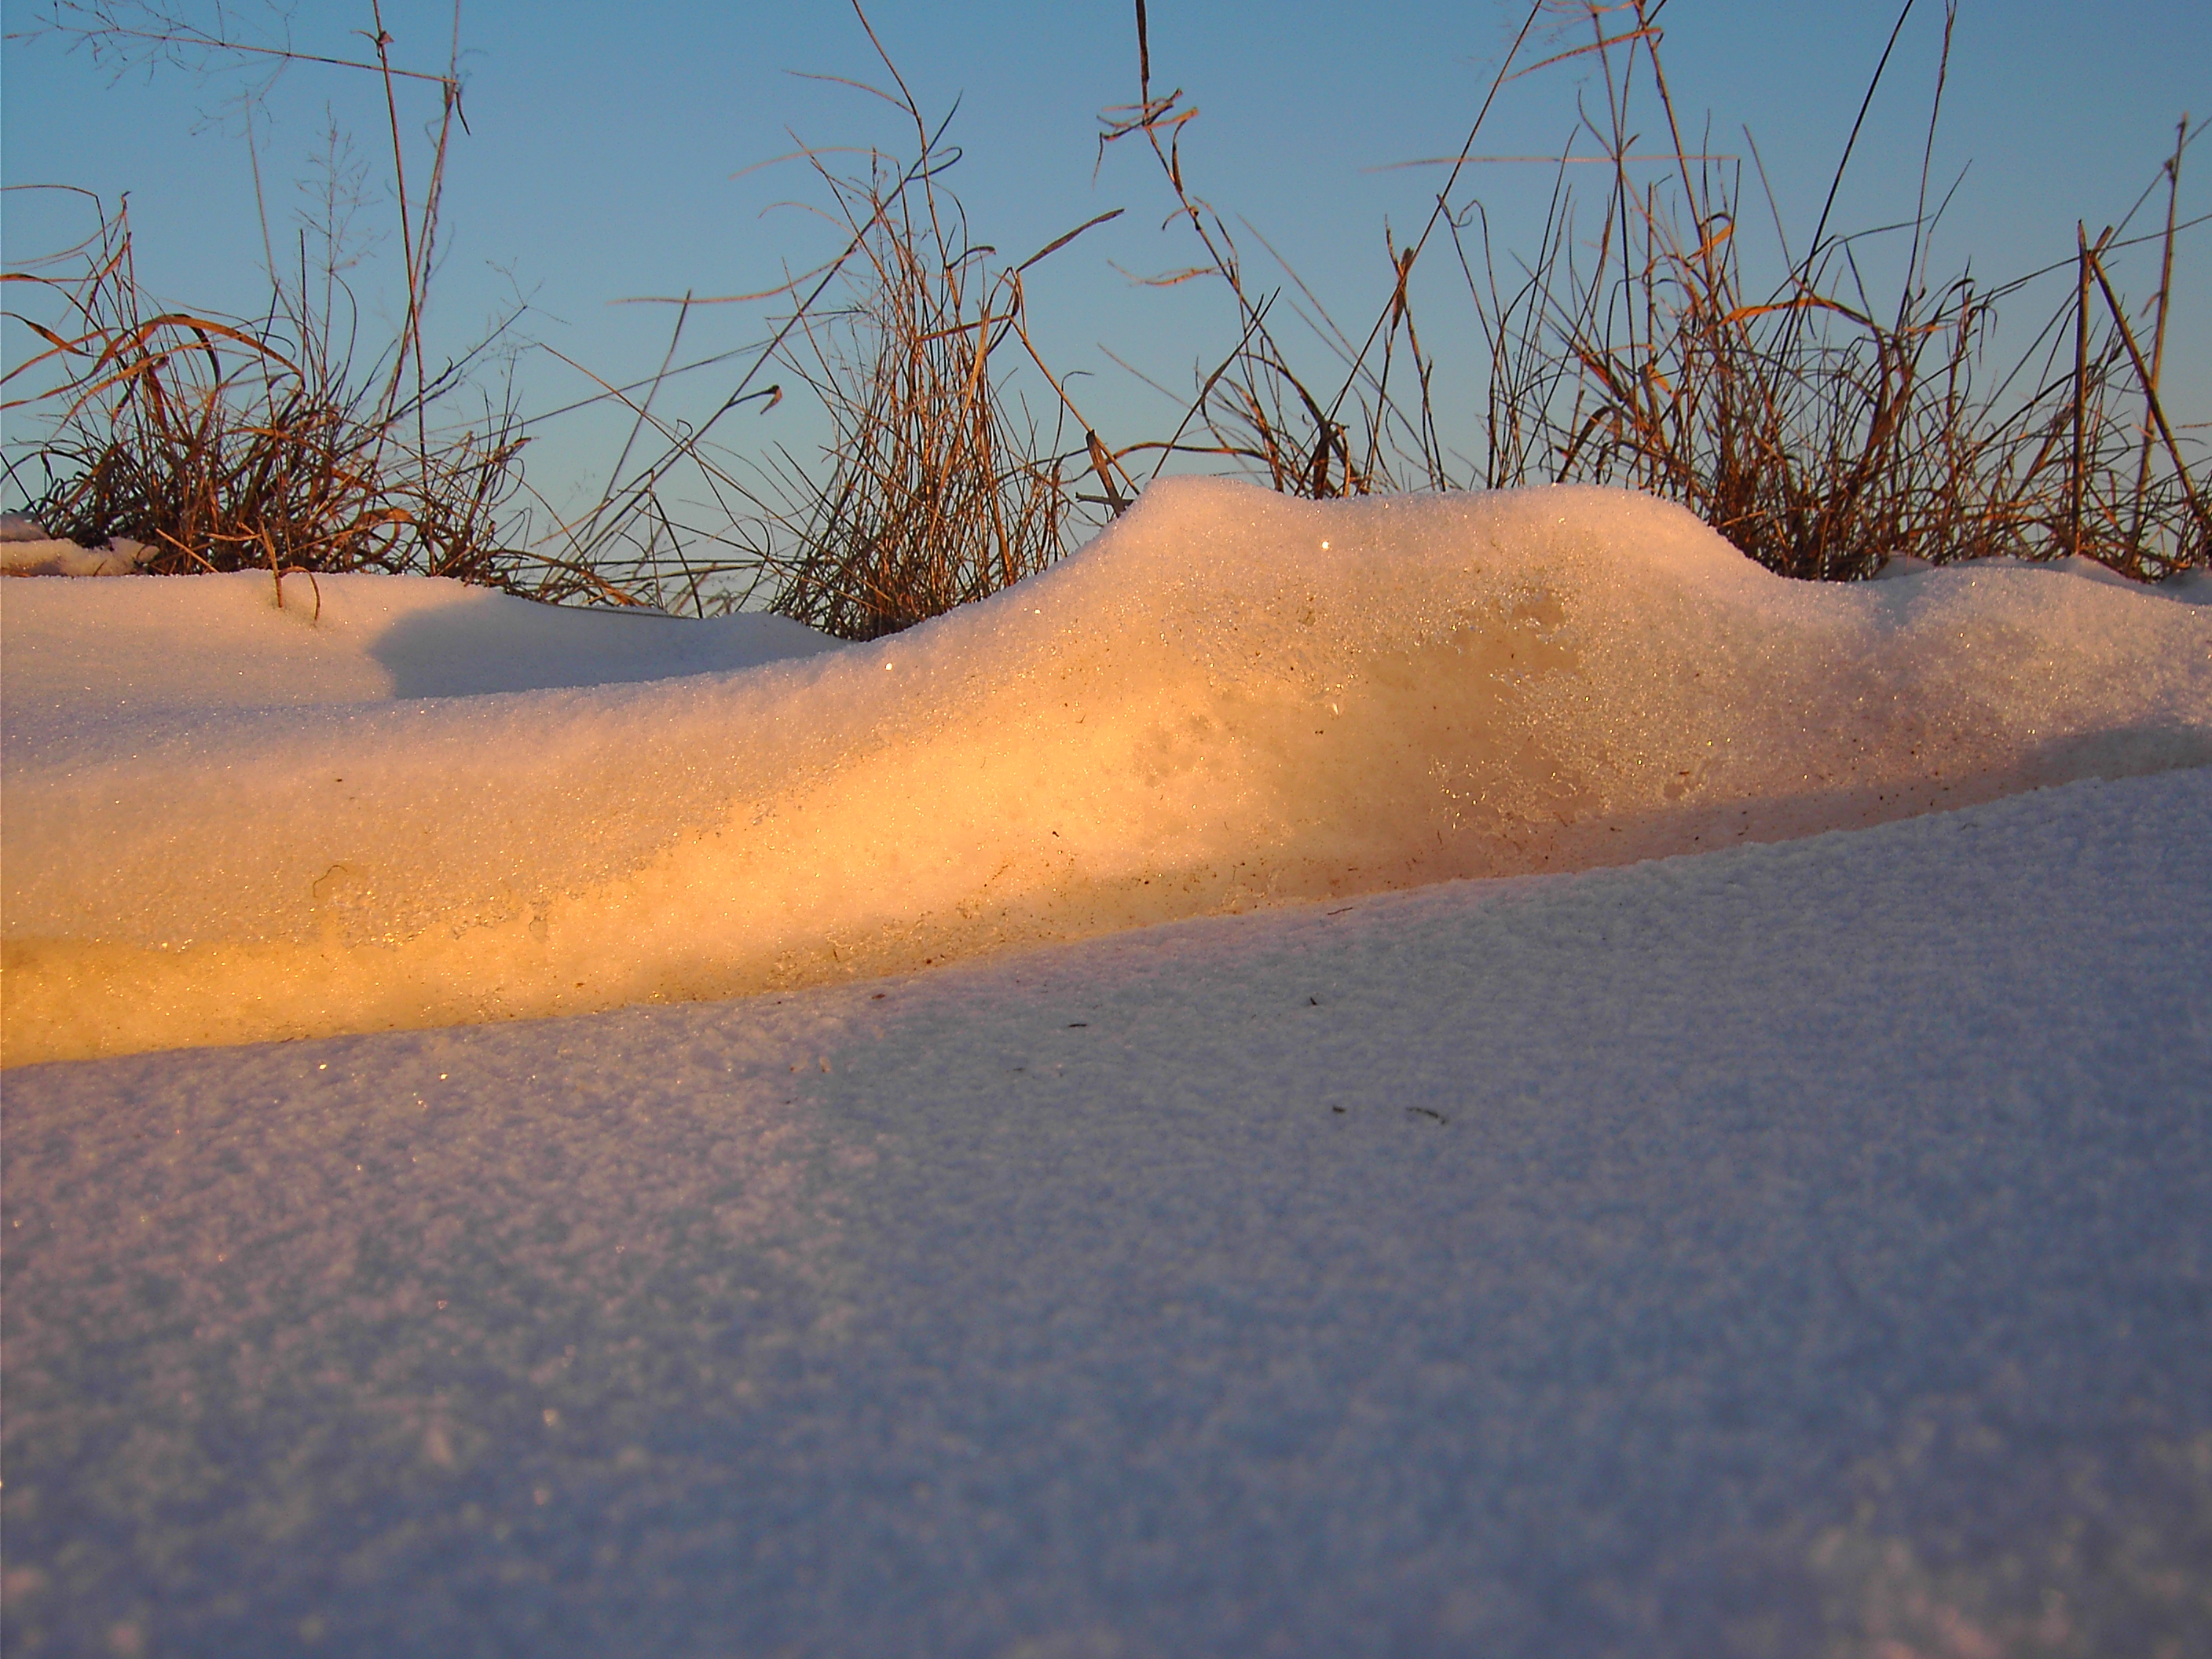 "Schneedünen" an einem Feldweg im Sonnenaufgang